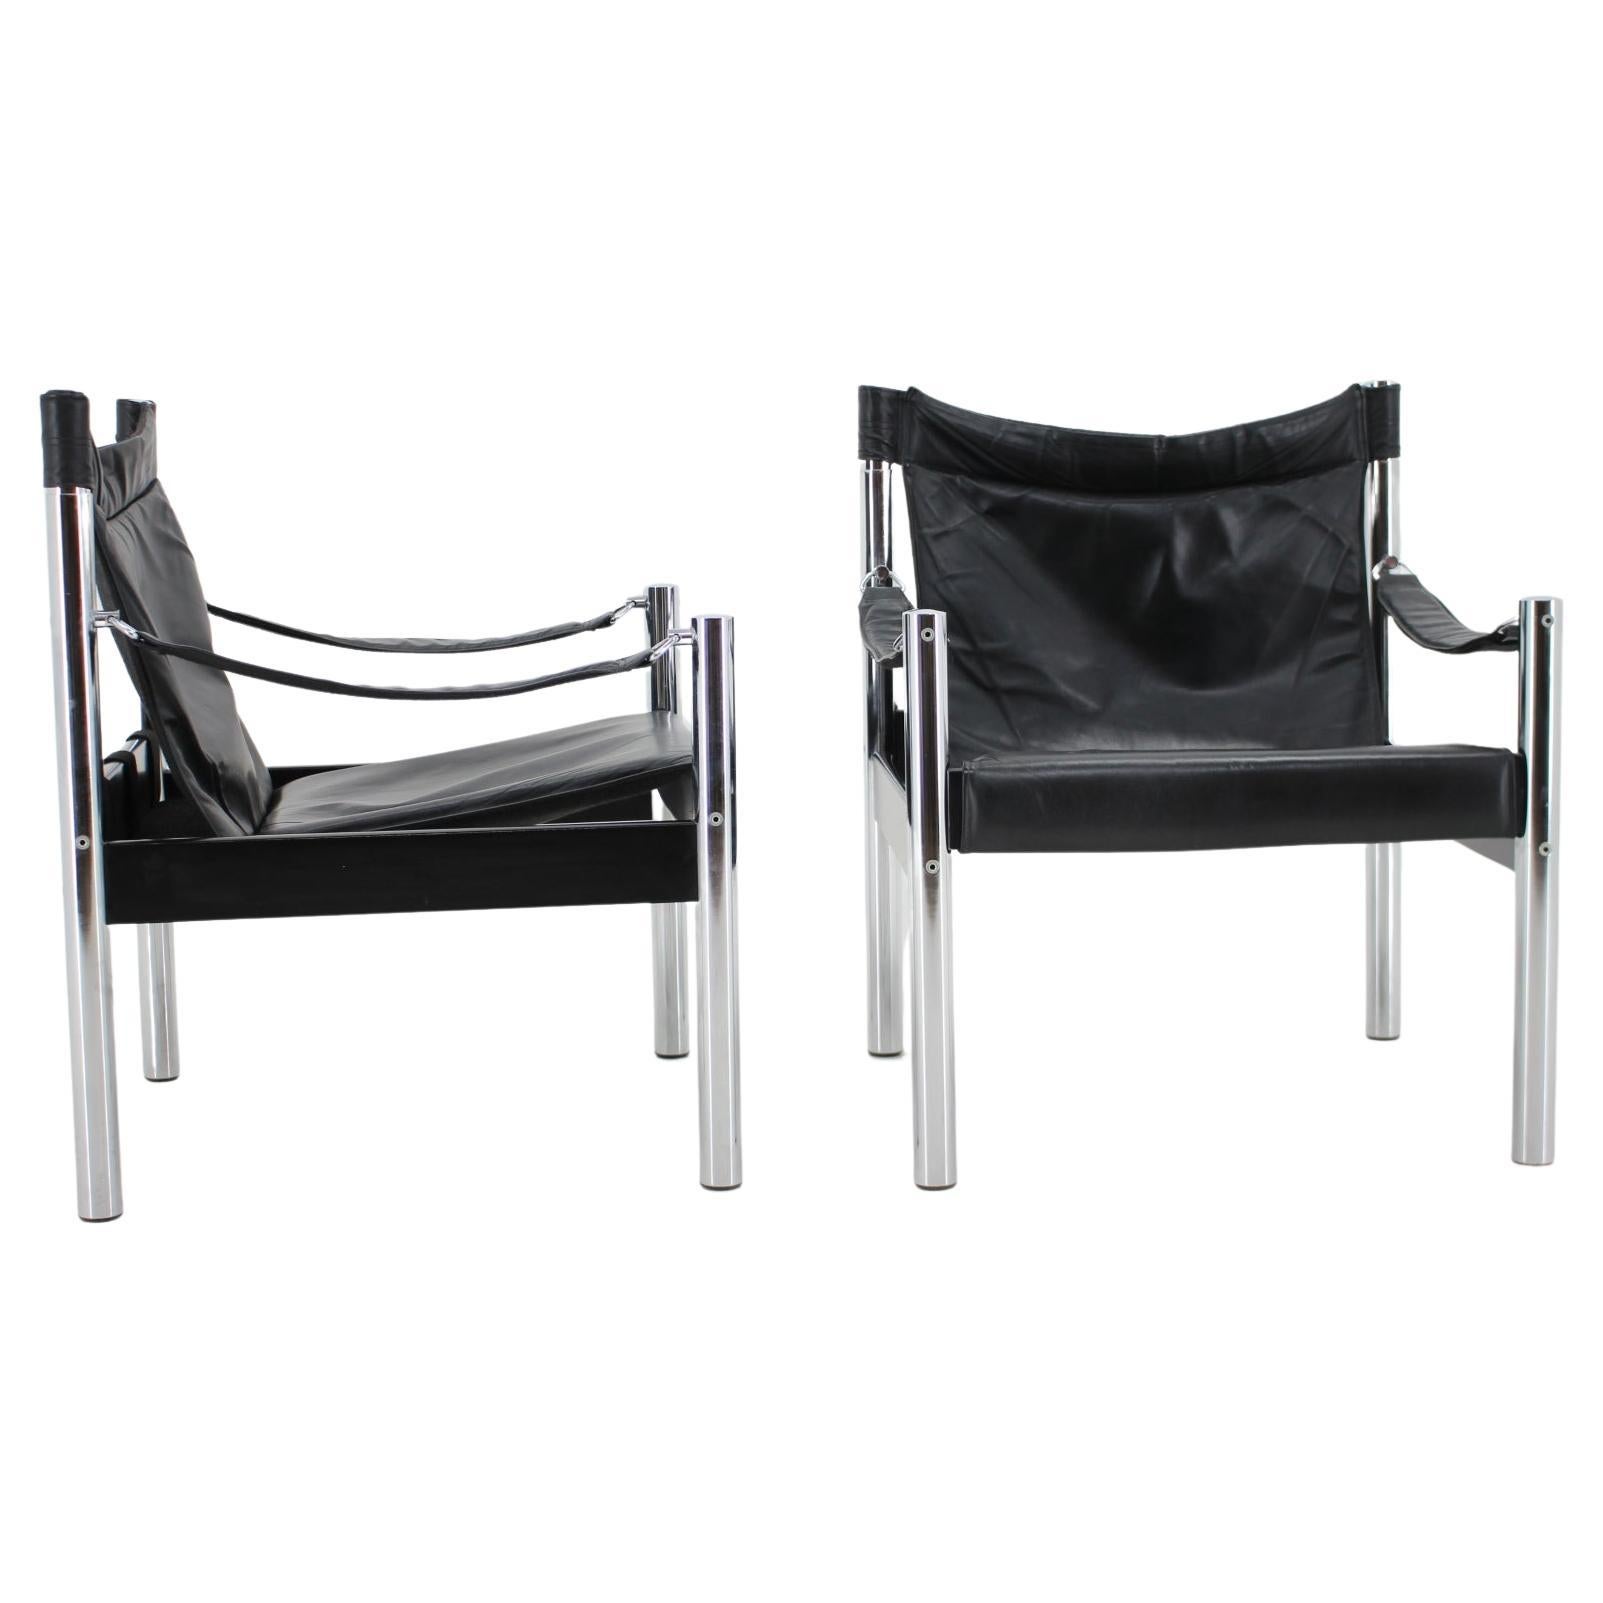 1970s Black Leather and Chrome Safari Chair by Johanson Design, Markaryd